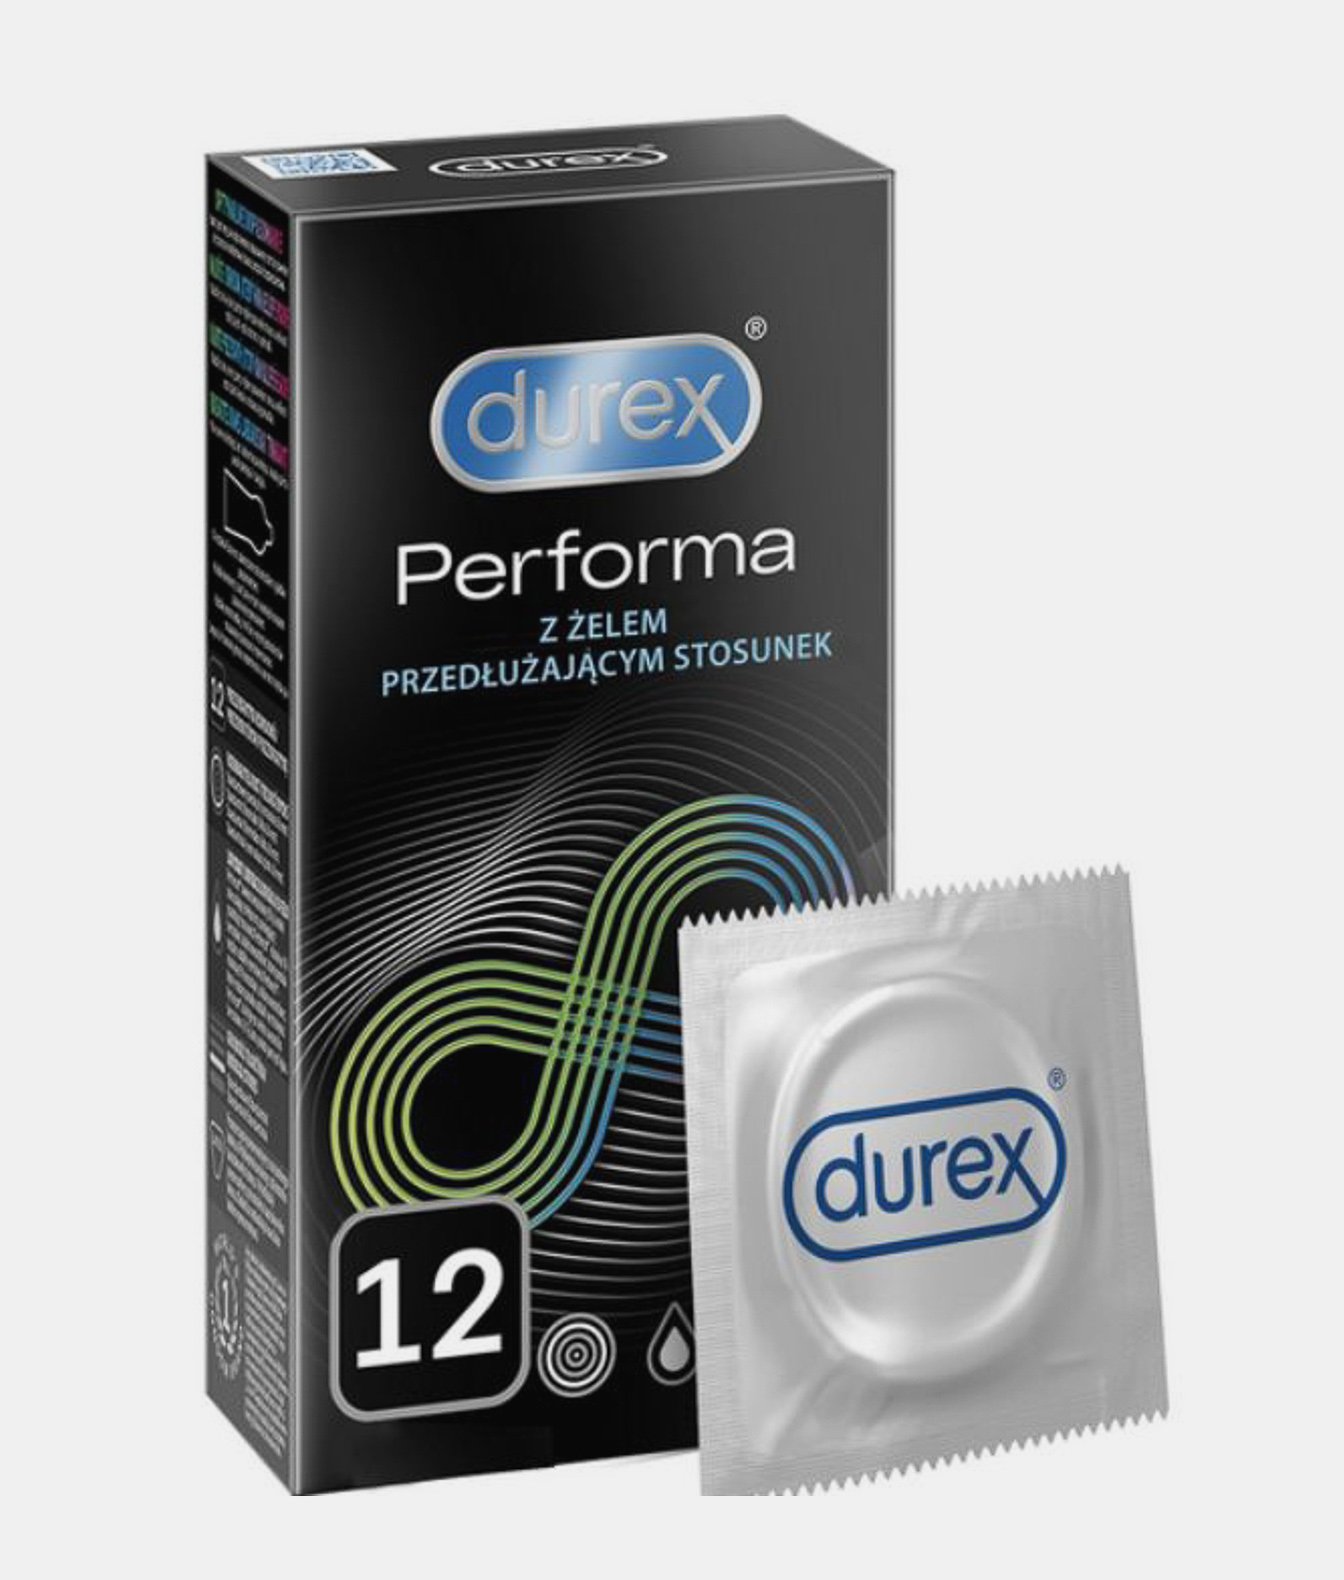 Durex Performa prezerwatywy przedłużające stosunek